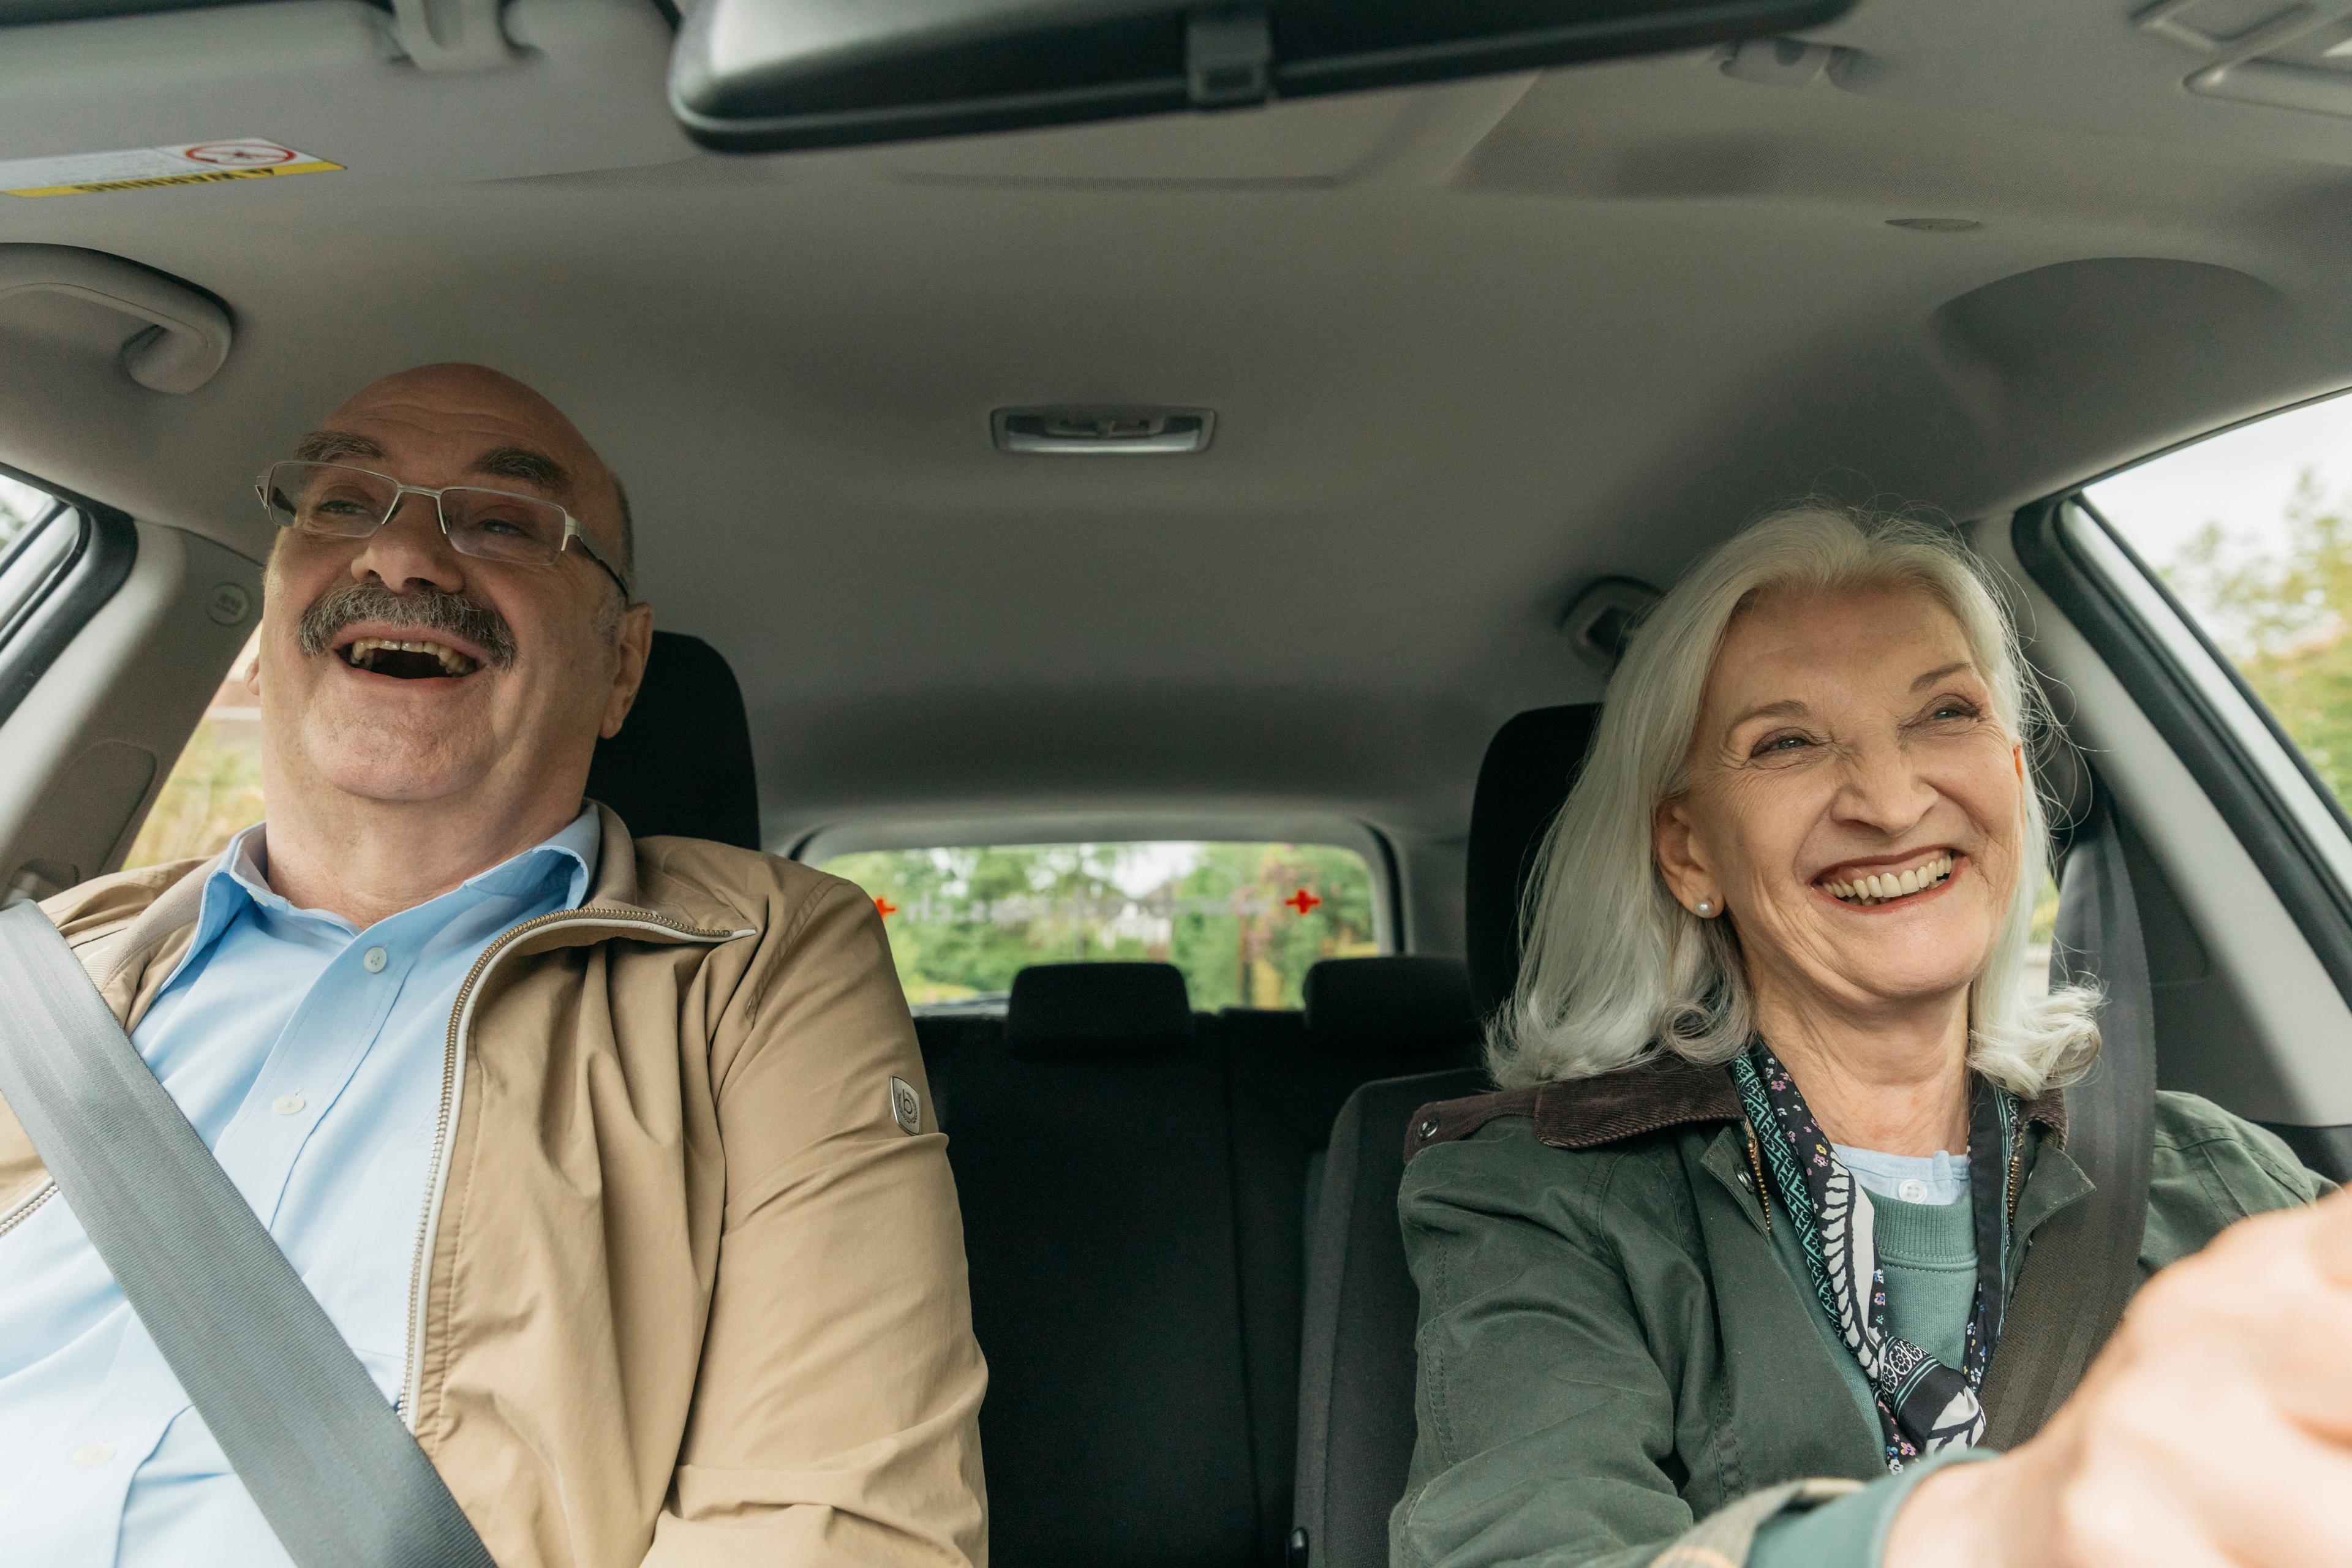 Fahrdienst: Eine ältere Dame sitzt beim Steuerrad und ein älterer Herr sitzt auf dem Beifahrersitz. Beide lachen.